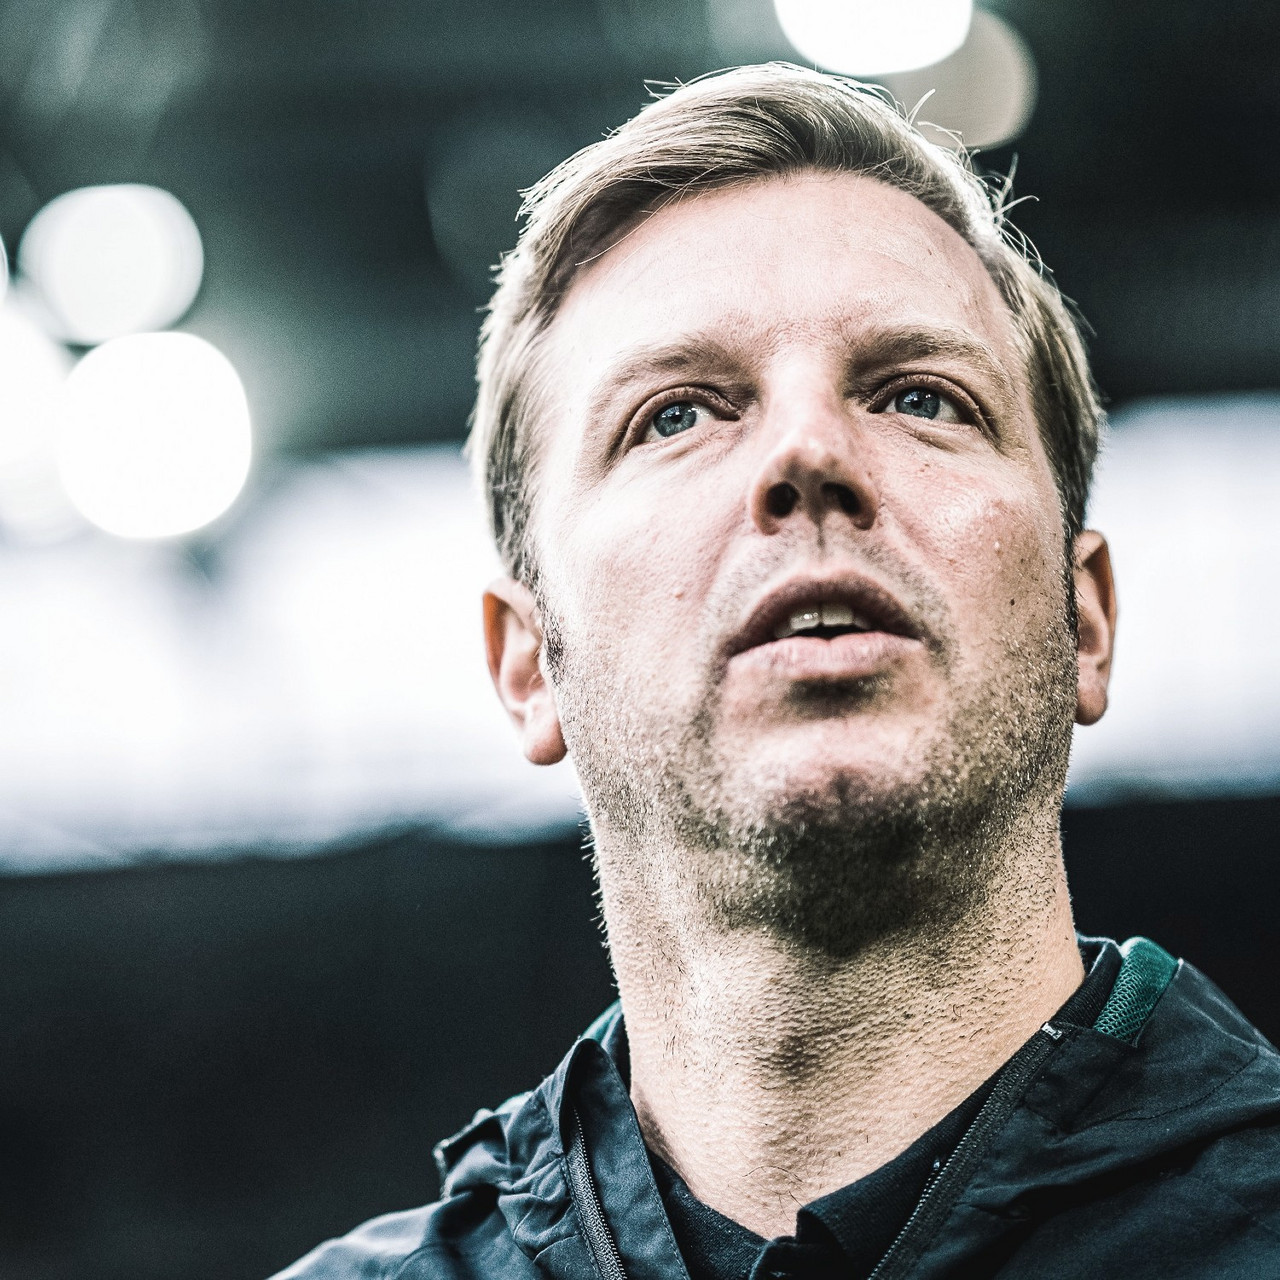 Florian Kohfeldt es el nuevo entrenador del VFL Wolfsburg